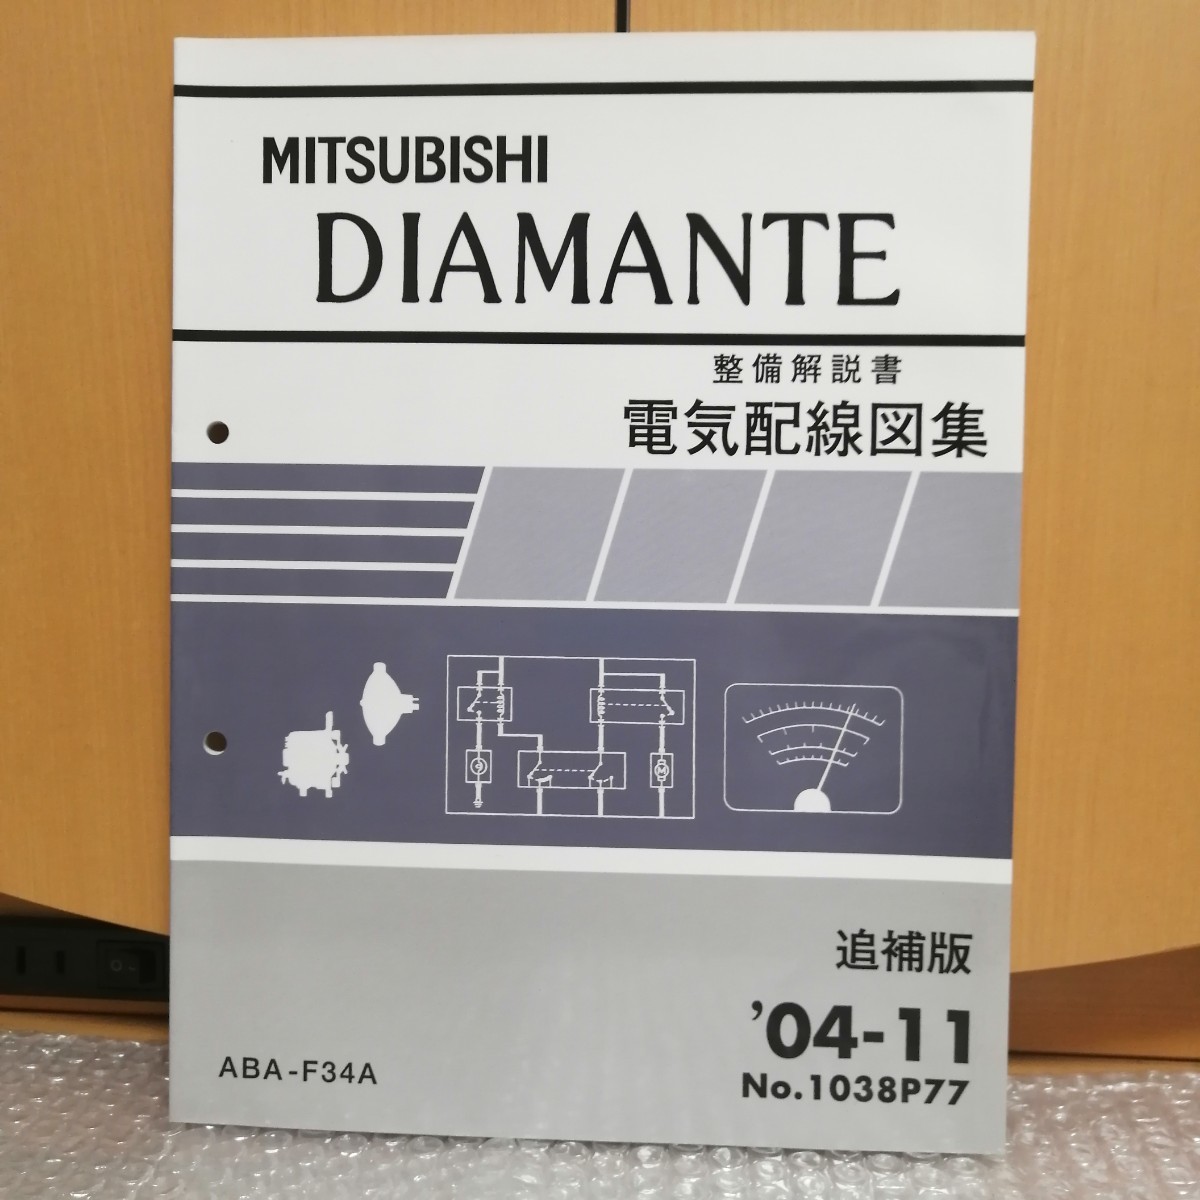  Mitsubishi Мицубиси Diamante DIAMANTE инструкция по обслуживанию электрический схема проводки сборник приложение 2004-11 ABA-F34A техническое обслуживание руководство по обслуживанию сервисная книжка книга по ремонту 